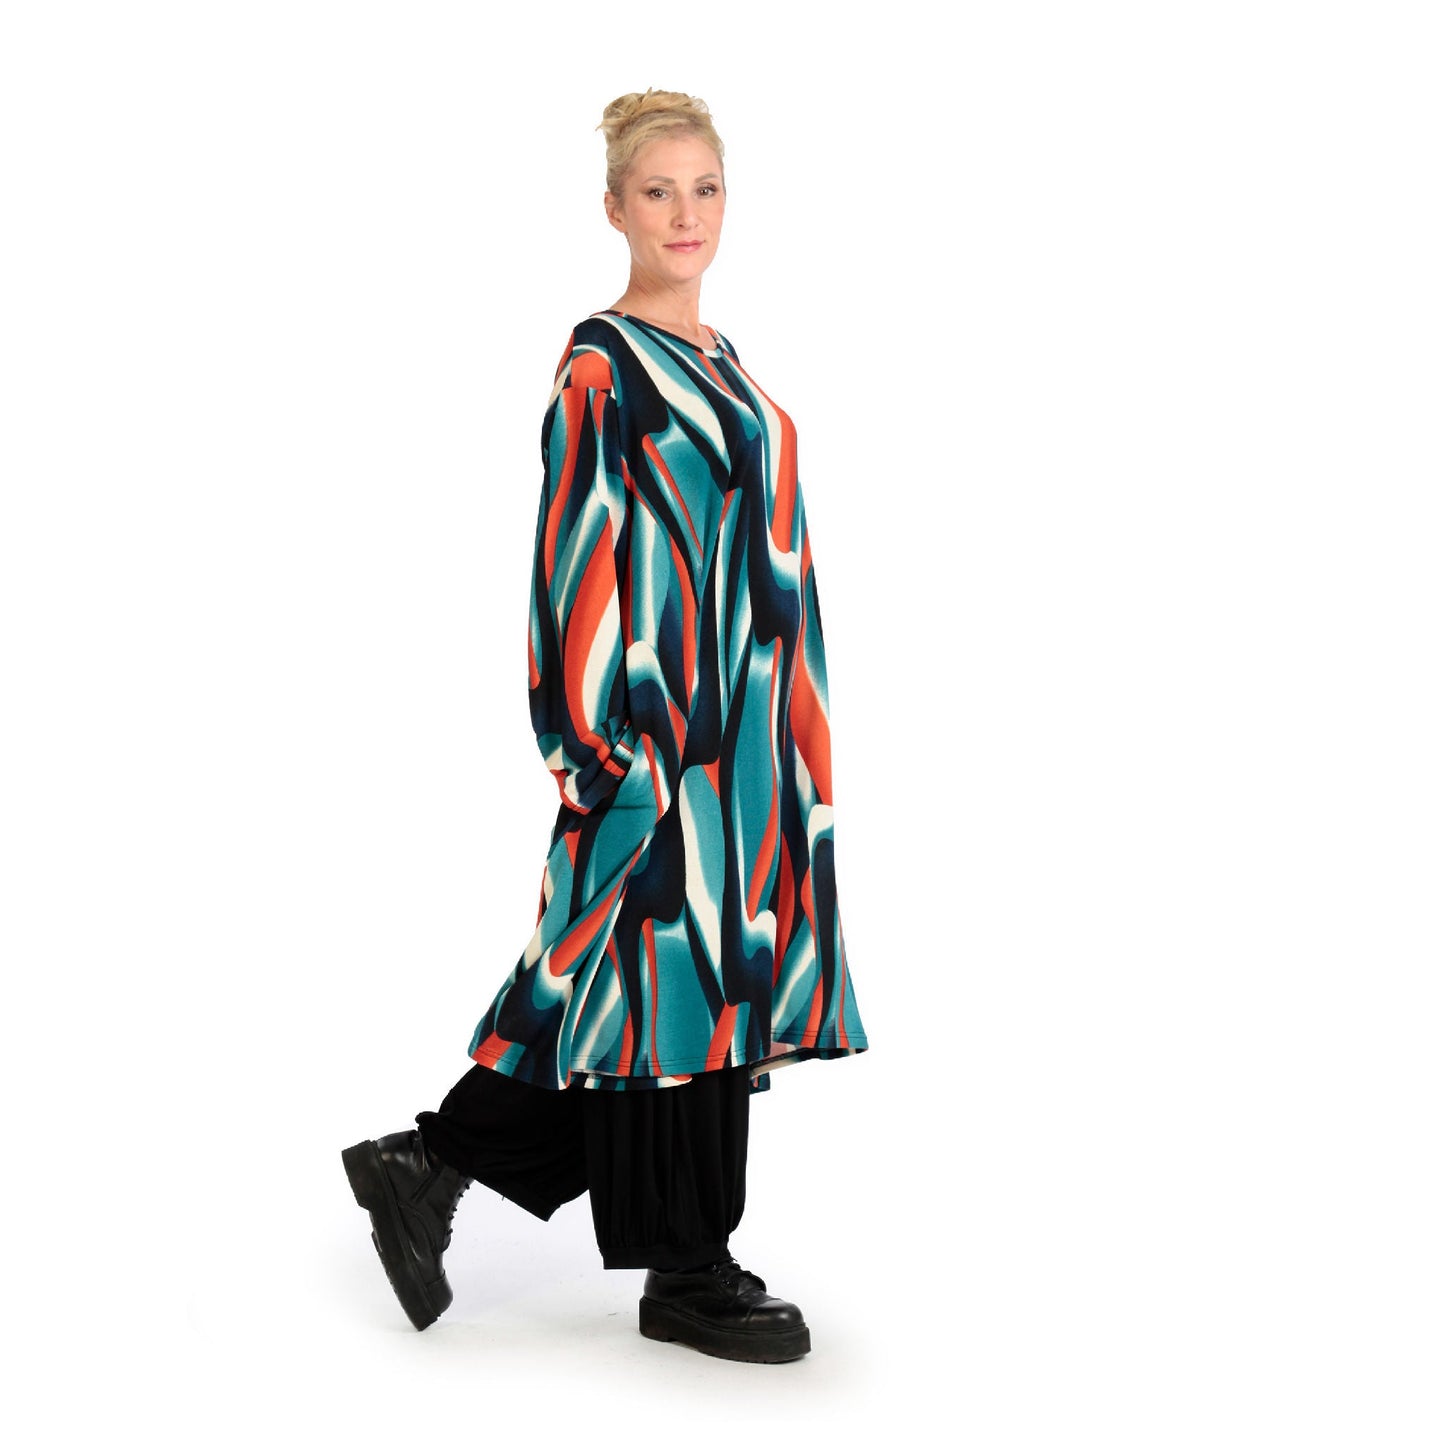 Winter Kleid in A-Form aus weicher Feinstrick Qualität, Aurora in Blau-Orange-Schwarz